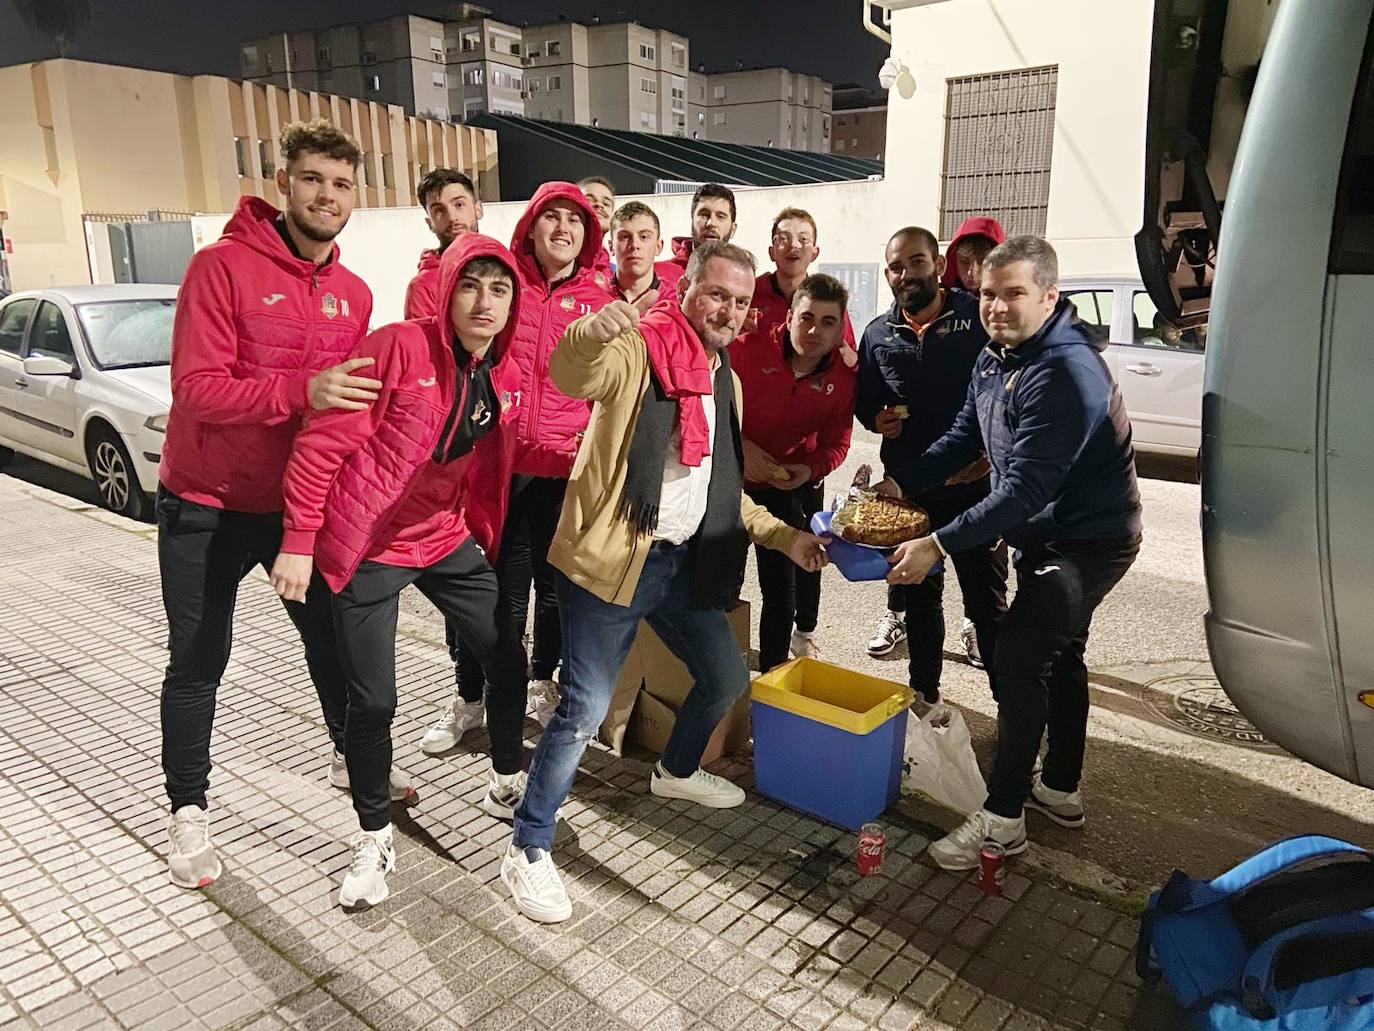 El equipo de Sergio Pacheco reponiendo fuerzas tras el partido y celebrando el cumpleaños de Rubén, degustando una tarta antes de emprender el viaje de regreso a Jaraíz de la Vera. /S. E.